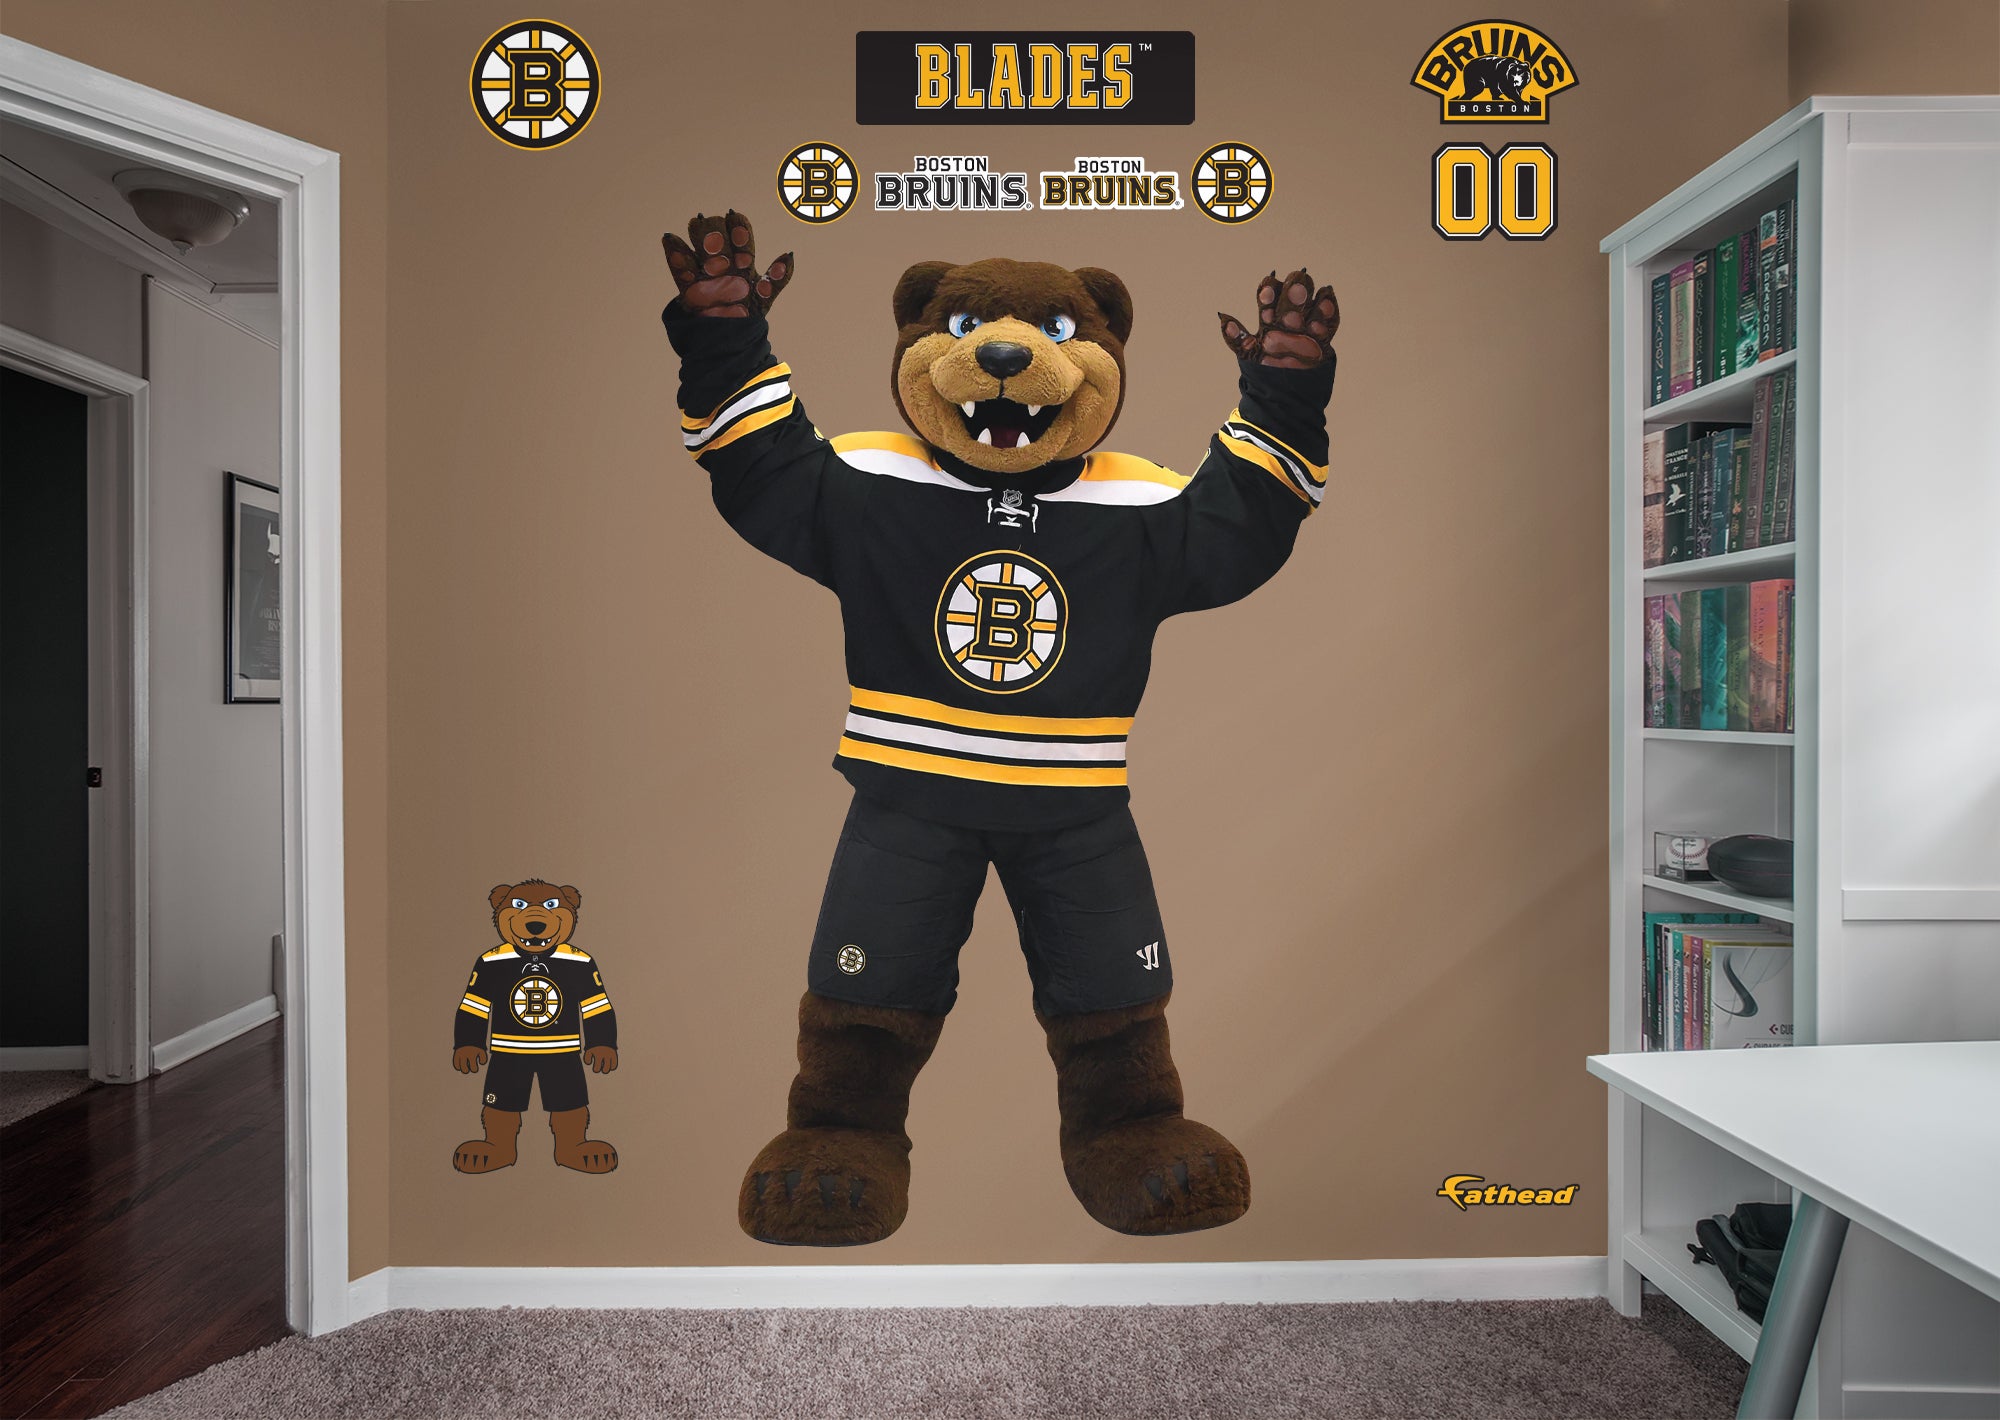 Boston Bruins Blades 2021 Mascot